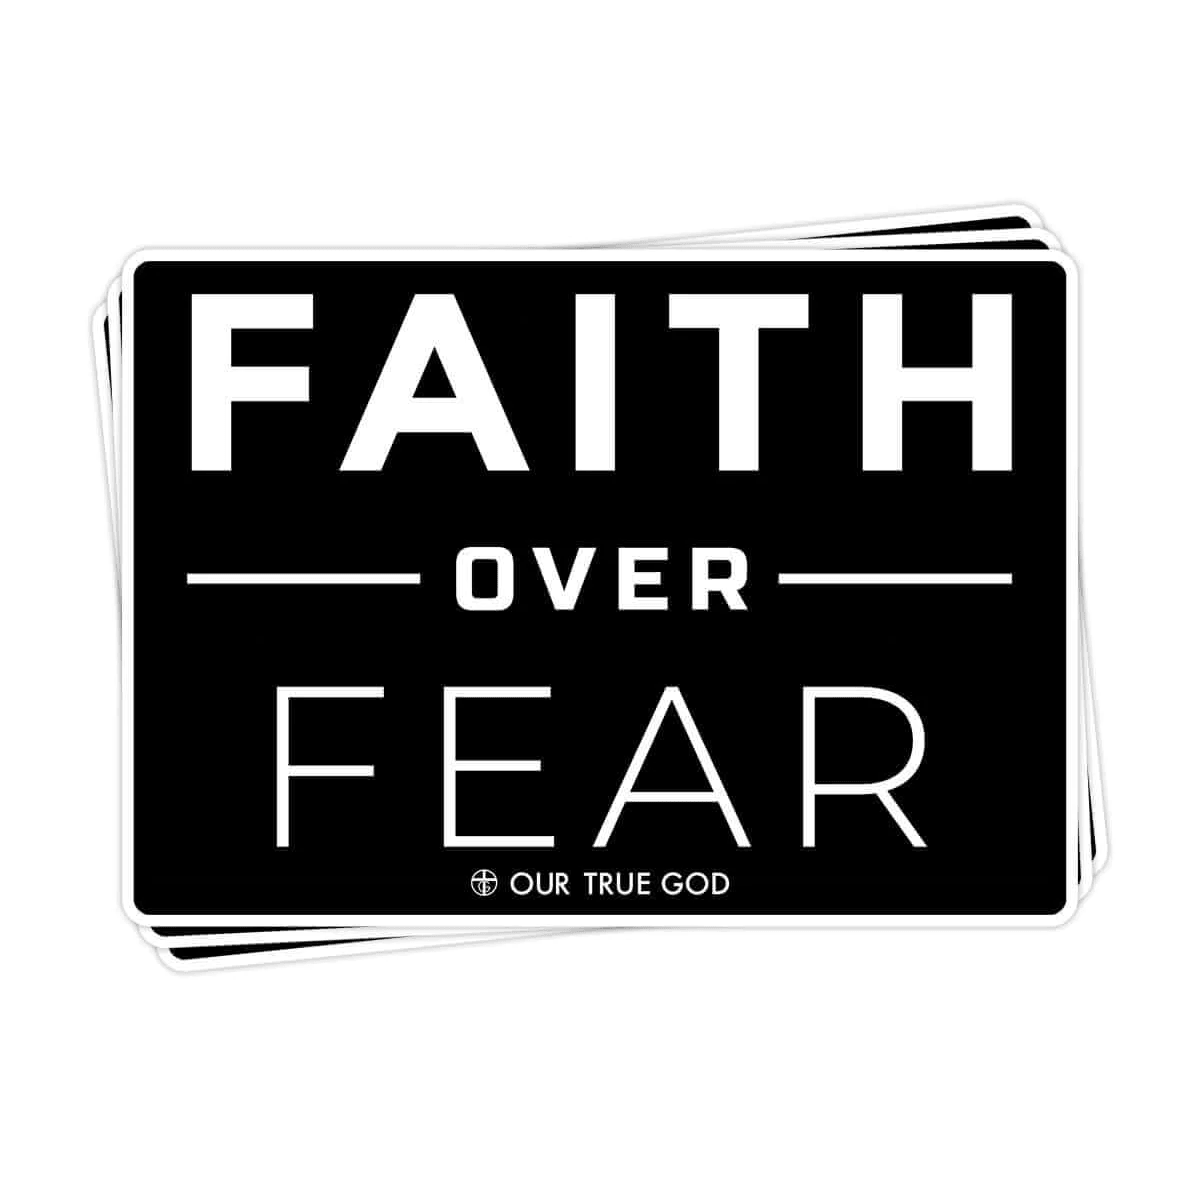 Faith Over Fear Decals - Our True God